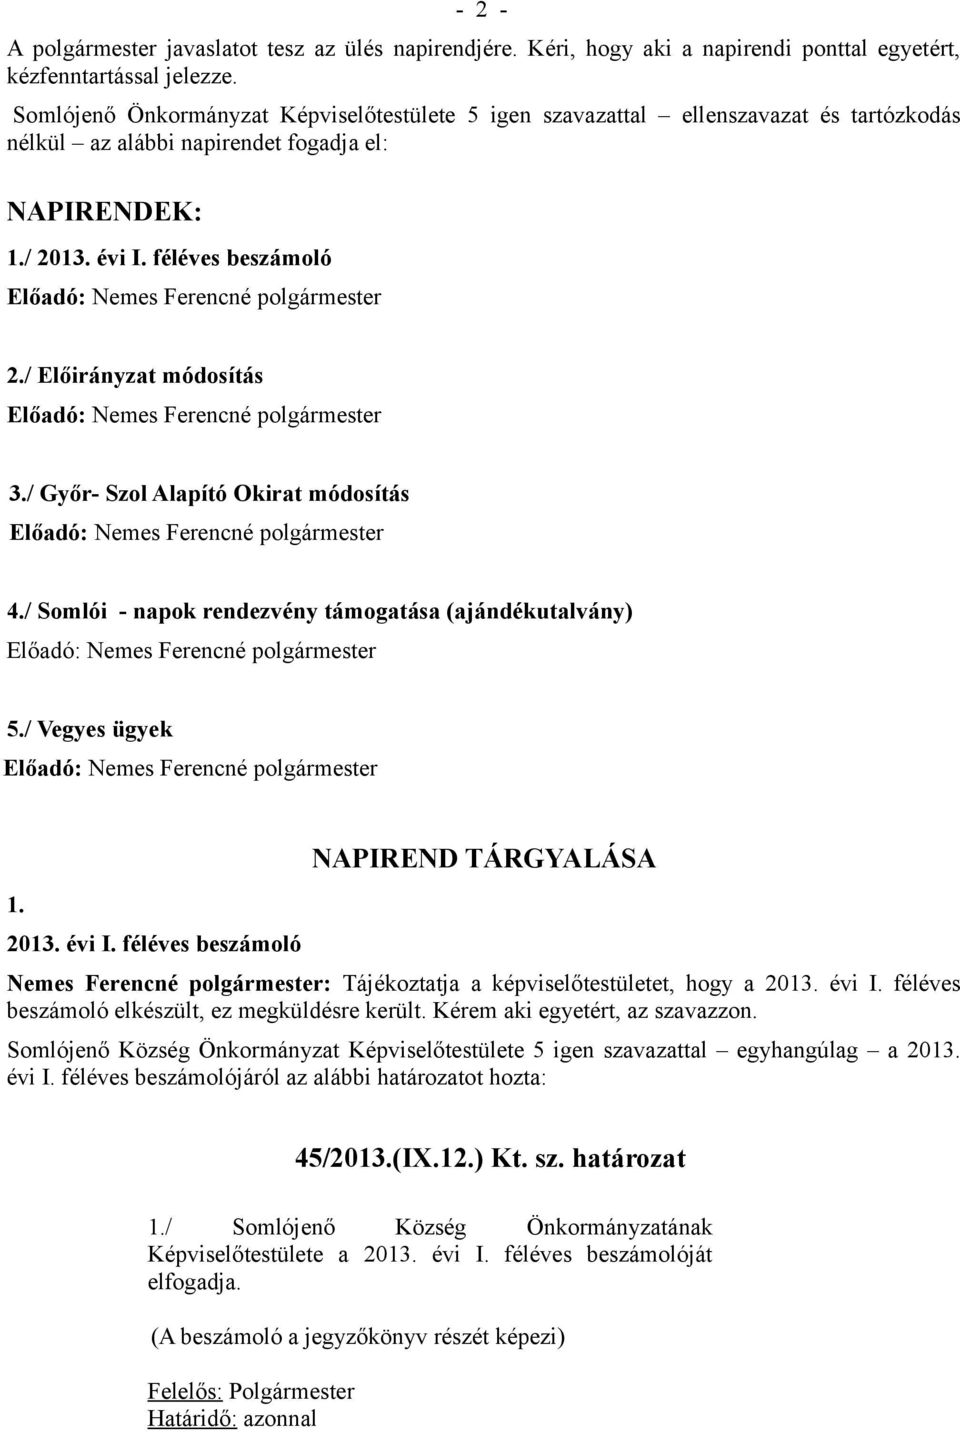 / Előirányzat módosítás 3./ Győr- Szol Alapító Okirat módosítás 4./ Somlói - napok rendezvény támogatása (ajándékutalvány) 5./ Vegyes ügyek 1. 2013. évi I.